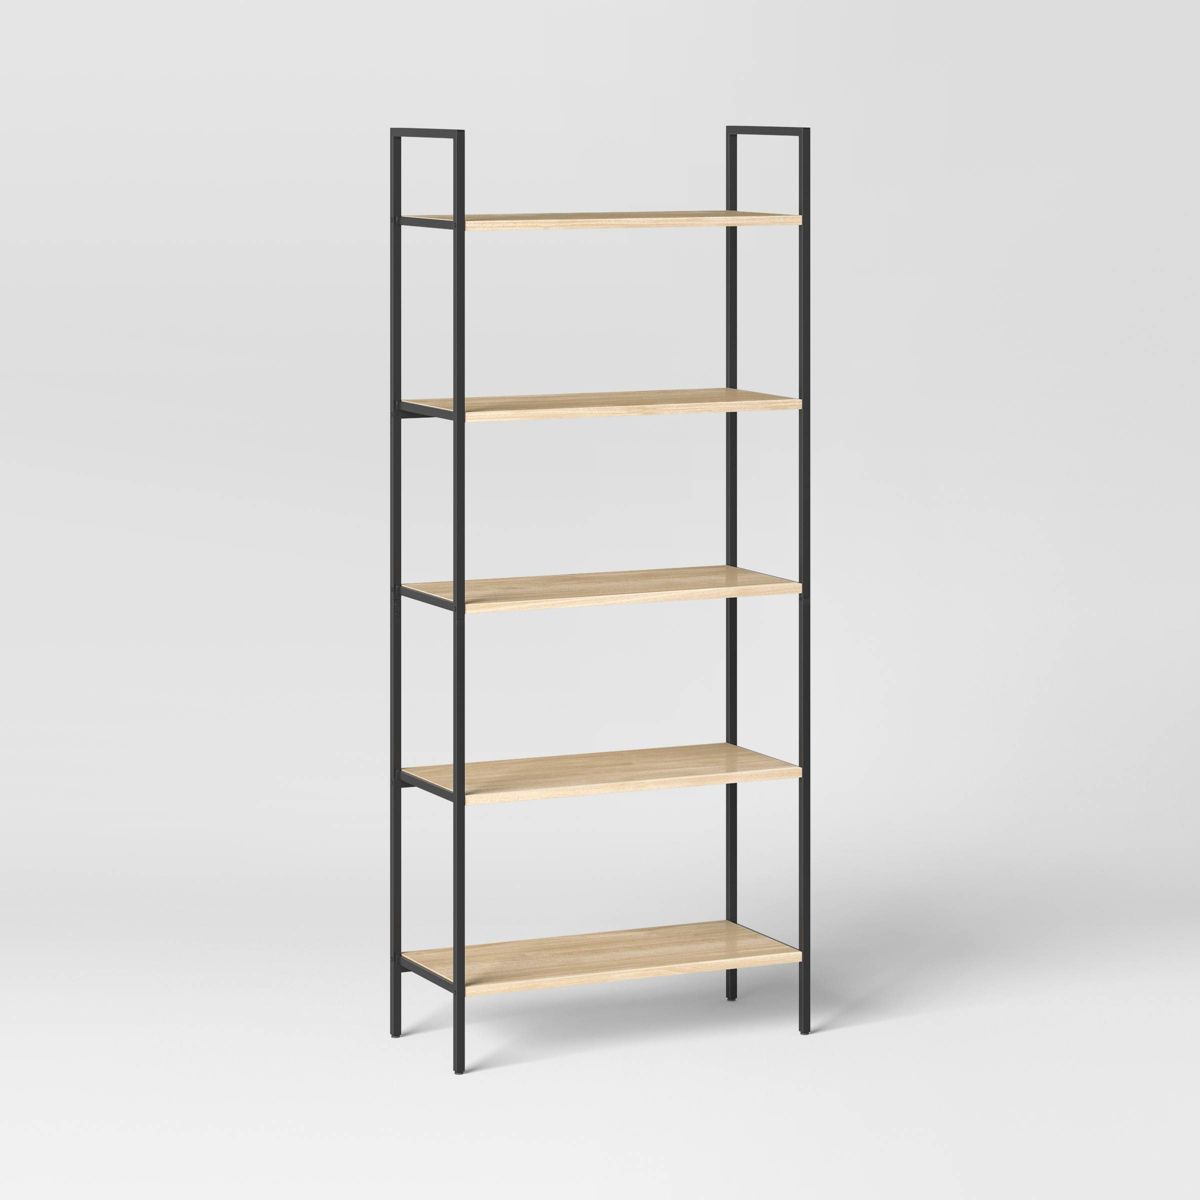 72" Loring 5 Shelf Ladder Bookshelf - Threshold™ | Target